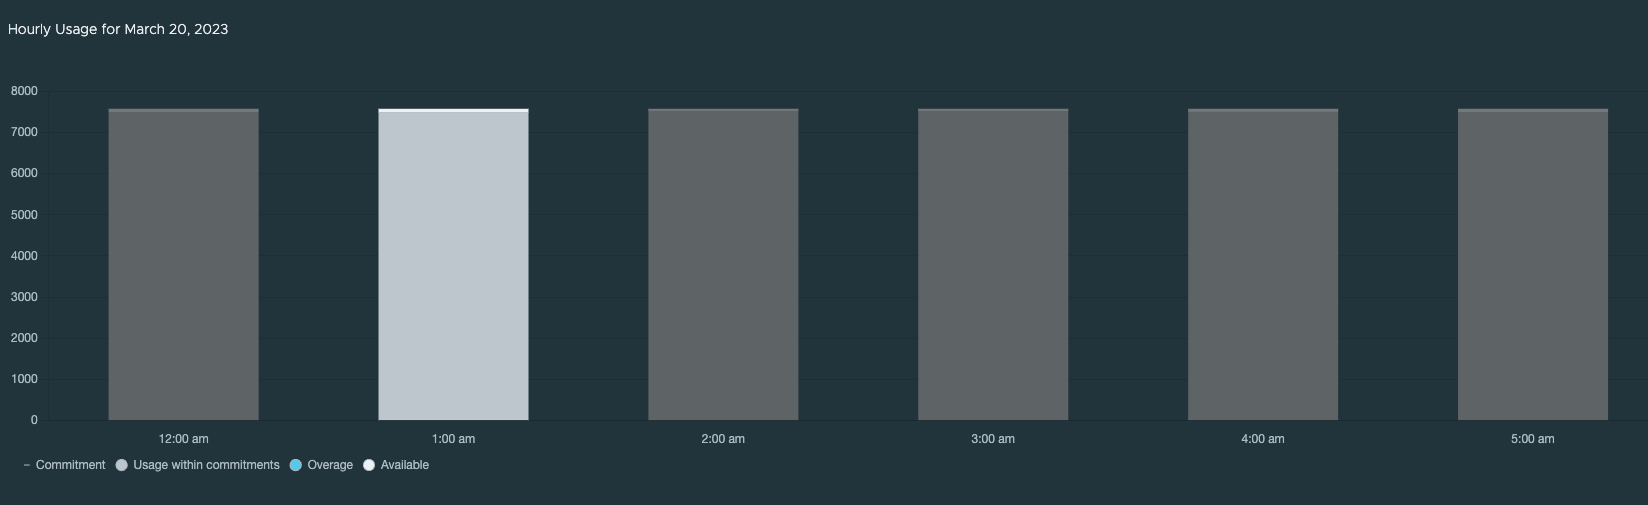 “每小时使用情况”图表示例。